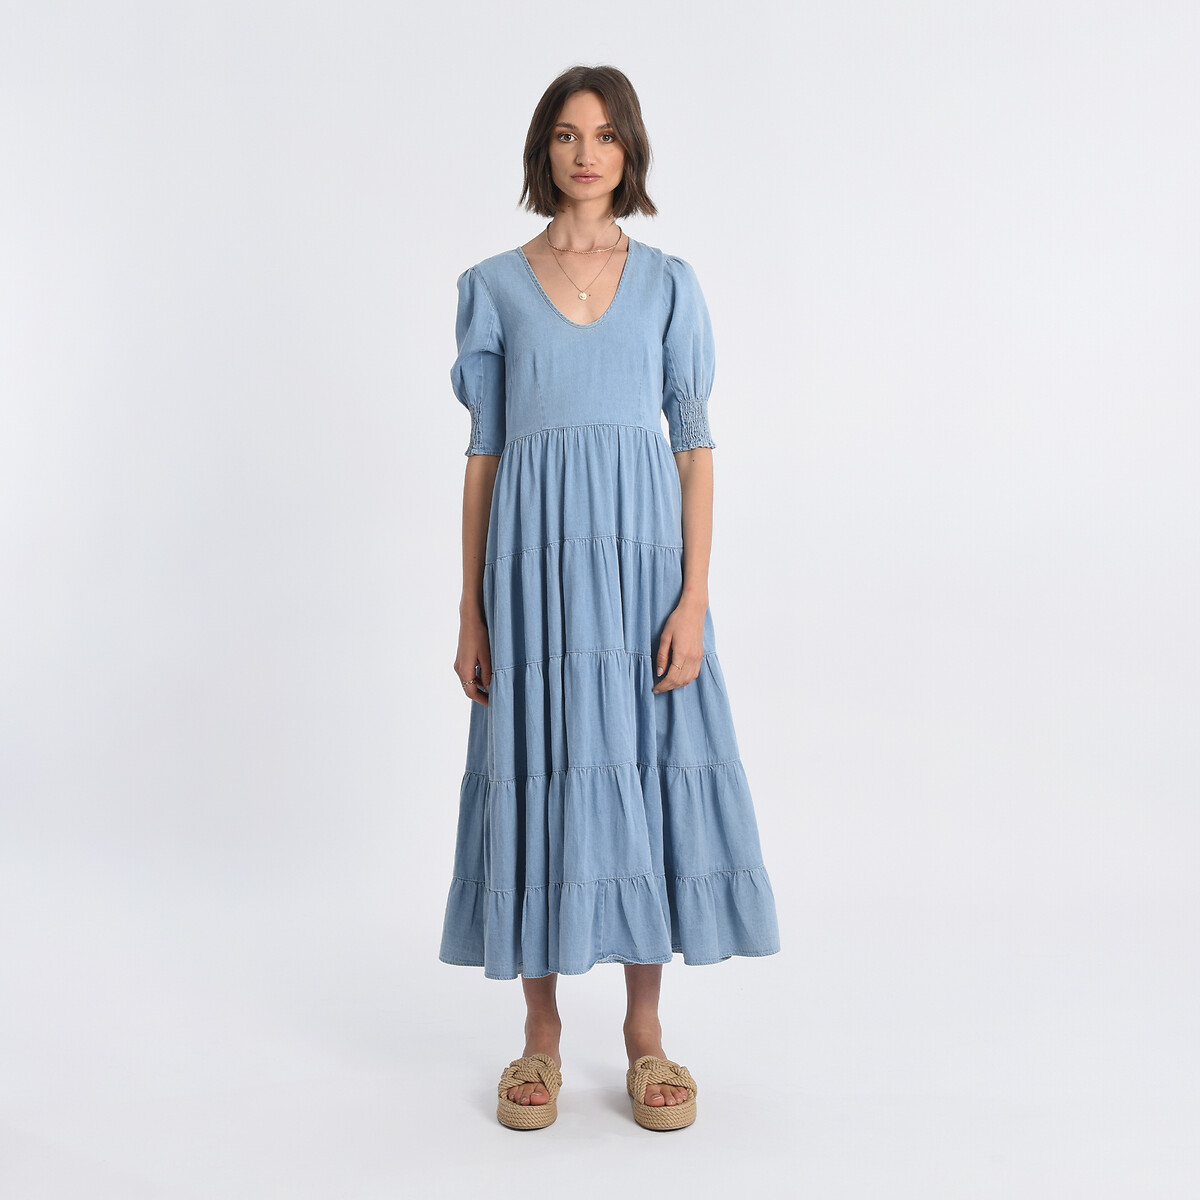 Платье длинное с воланами XL синий платье длинное на пуговицах с воланами с поясом 46 синий